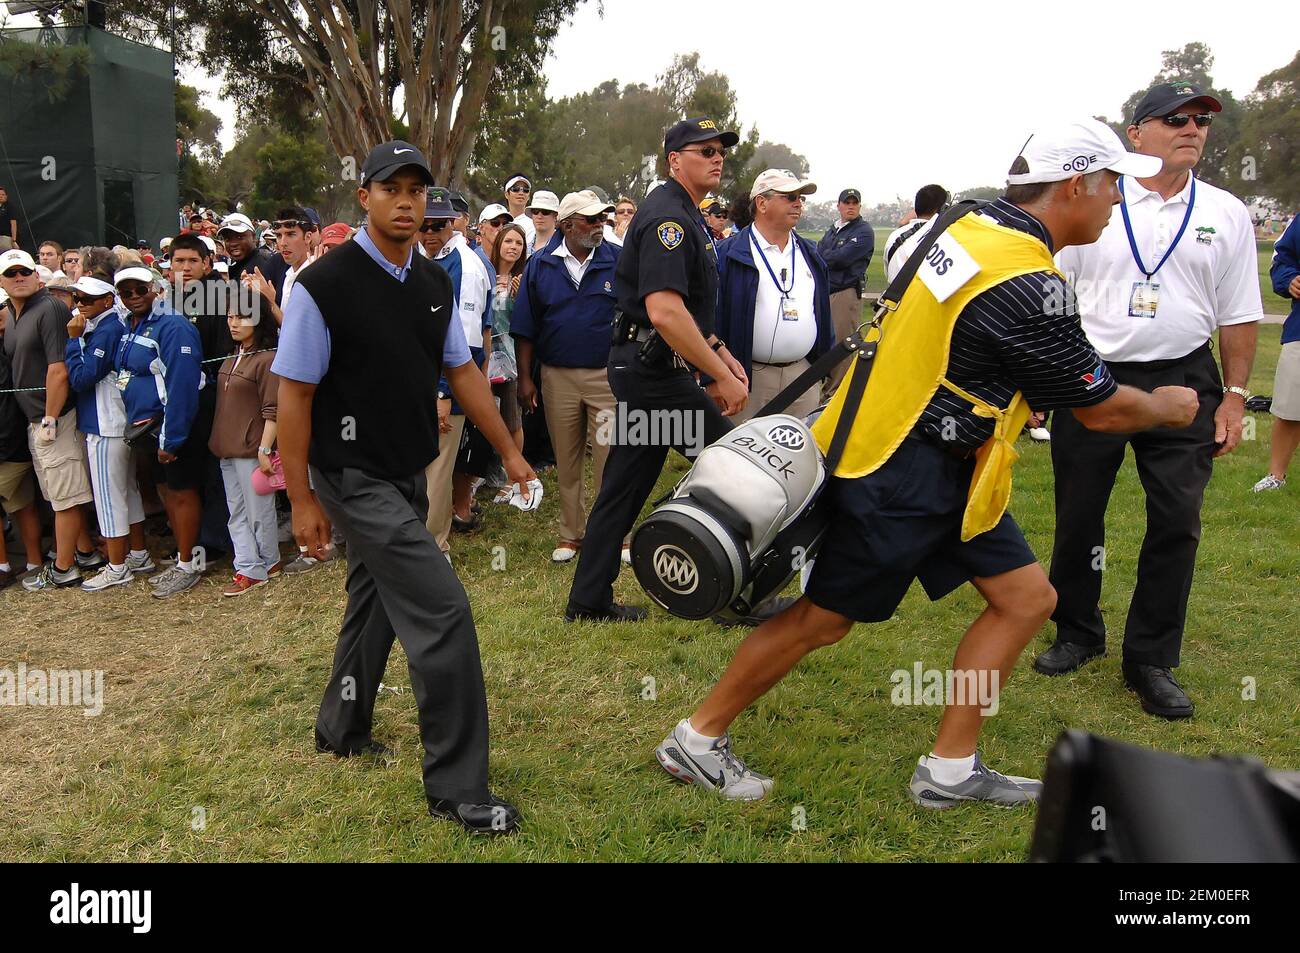 Parcours de golf de Torrey Pines. 14 juin 2008. CA.Tiger Woods (USA) pendant la troisième partie de l'US Open au parcours de golf de Torrey Pines. Louis Lopez/Cal Sport Media. Crédit : csm/Alay Live News Banque D'Images